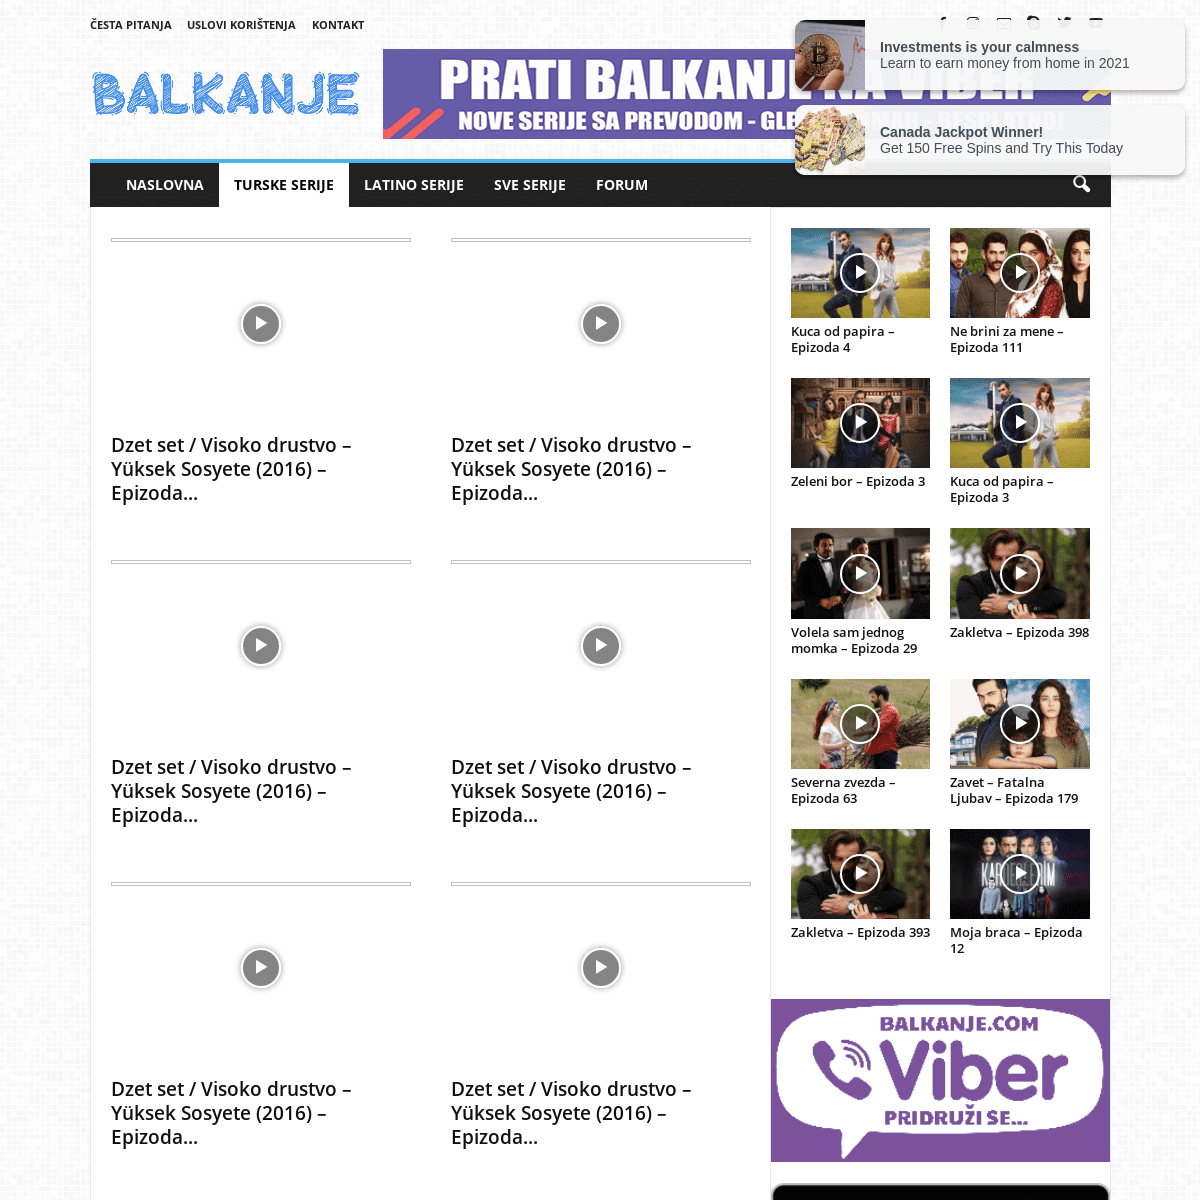 A complete backup of https://balkanje.com/turske-serije/dzet-set-visoko-drustvo-2016/